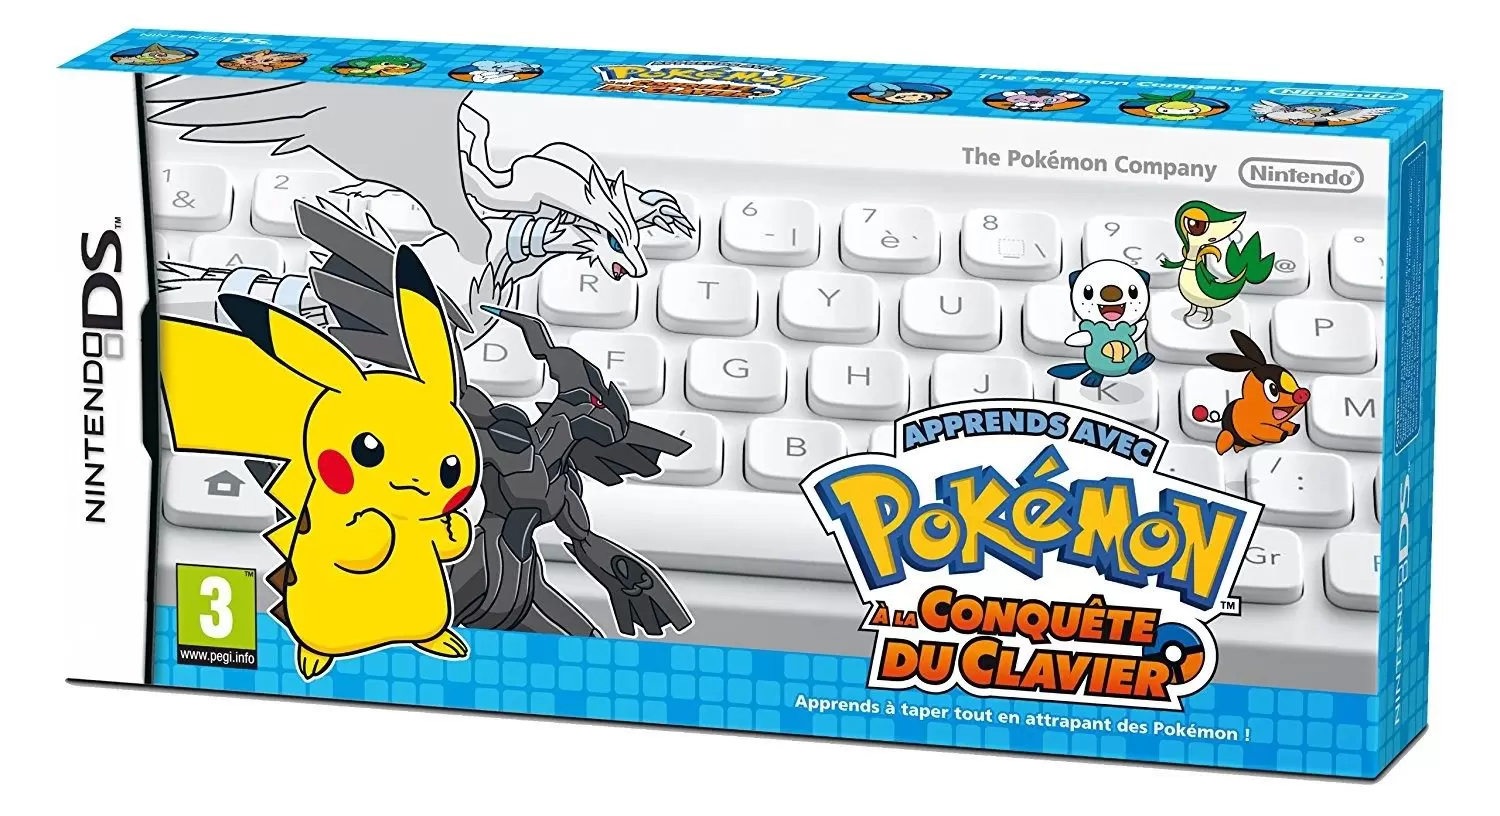 Nintendo DS Games - Apprends avec Pokémon À la conquête du clavier